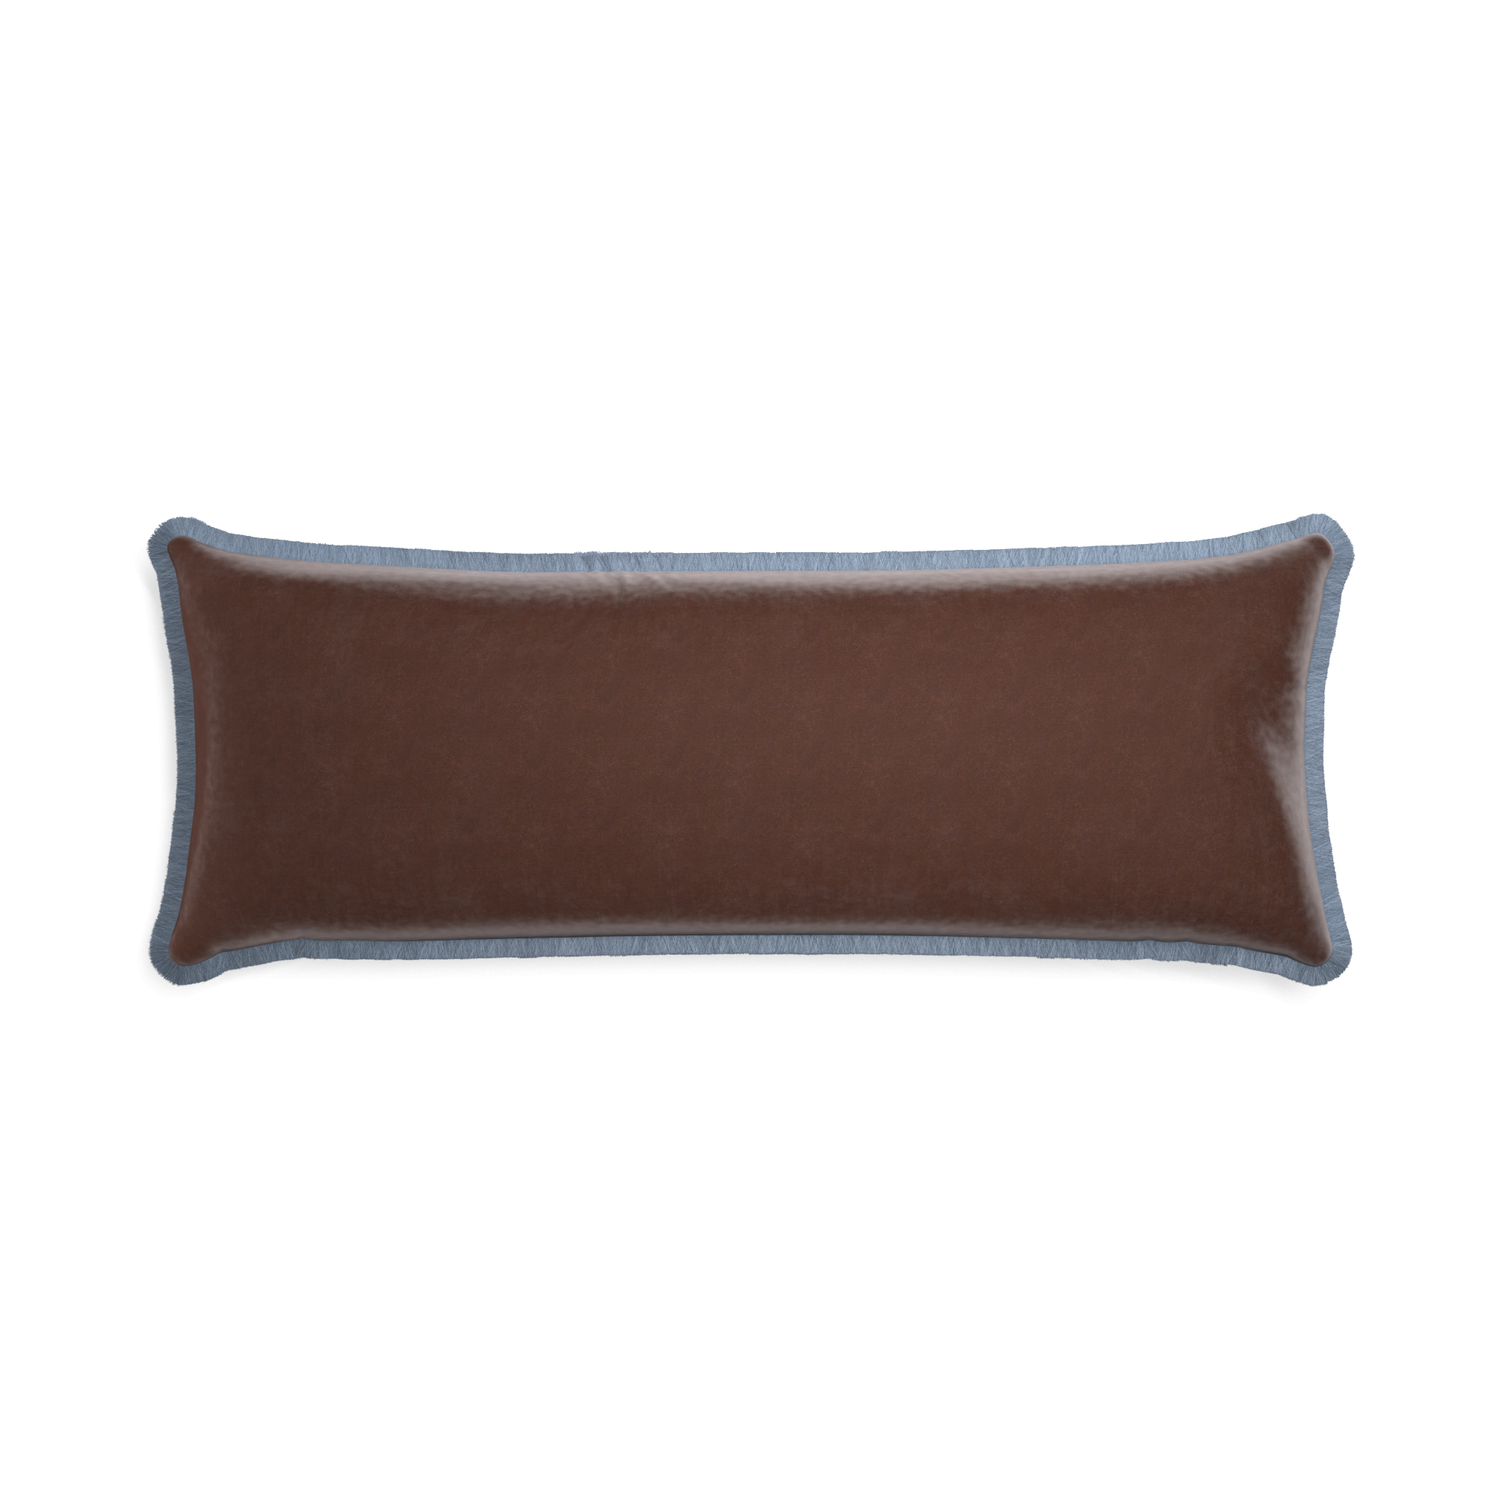 rectangle brown velvet pillow with sky blue fringe